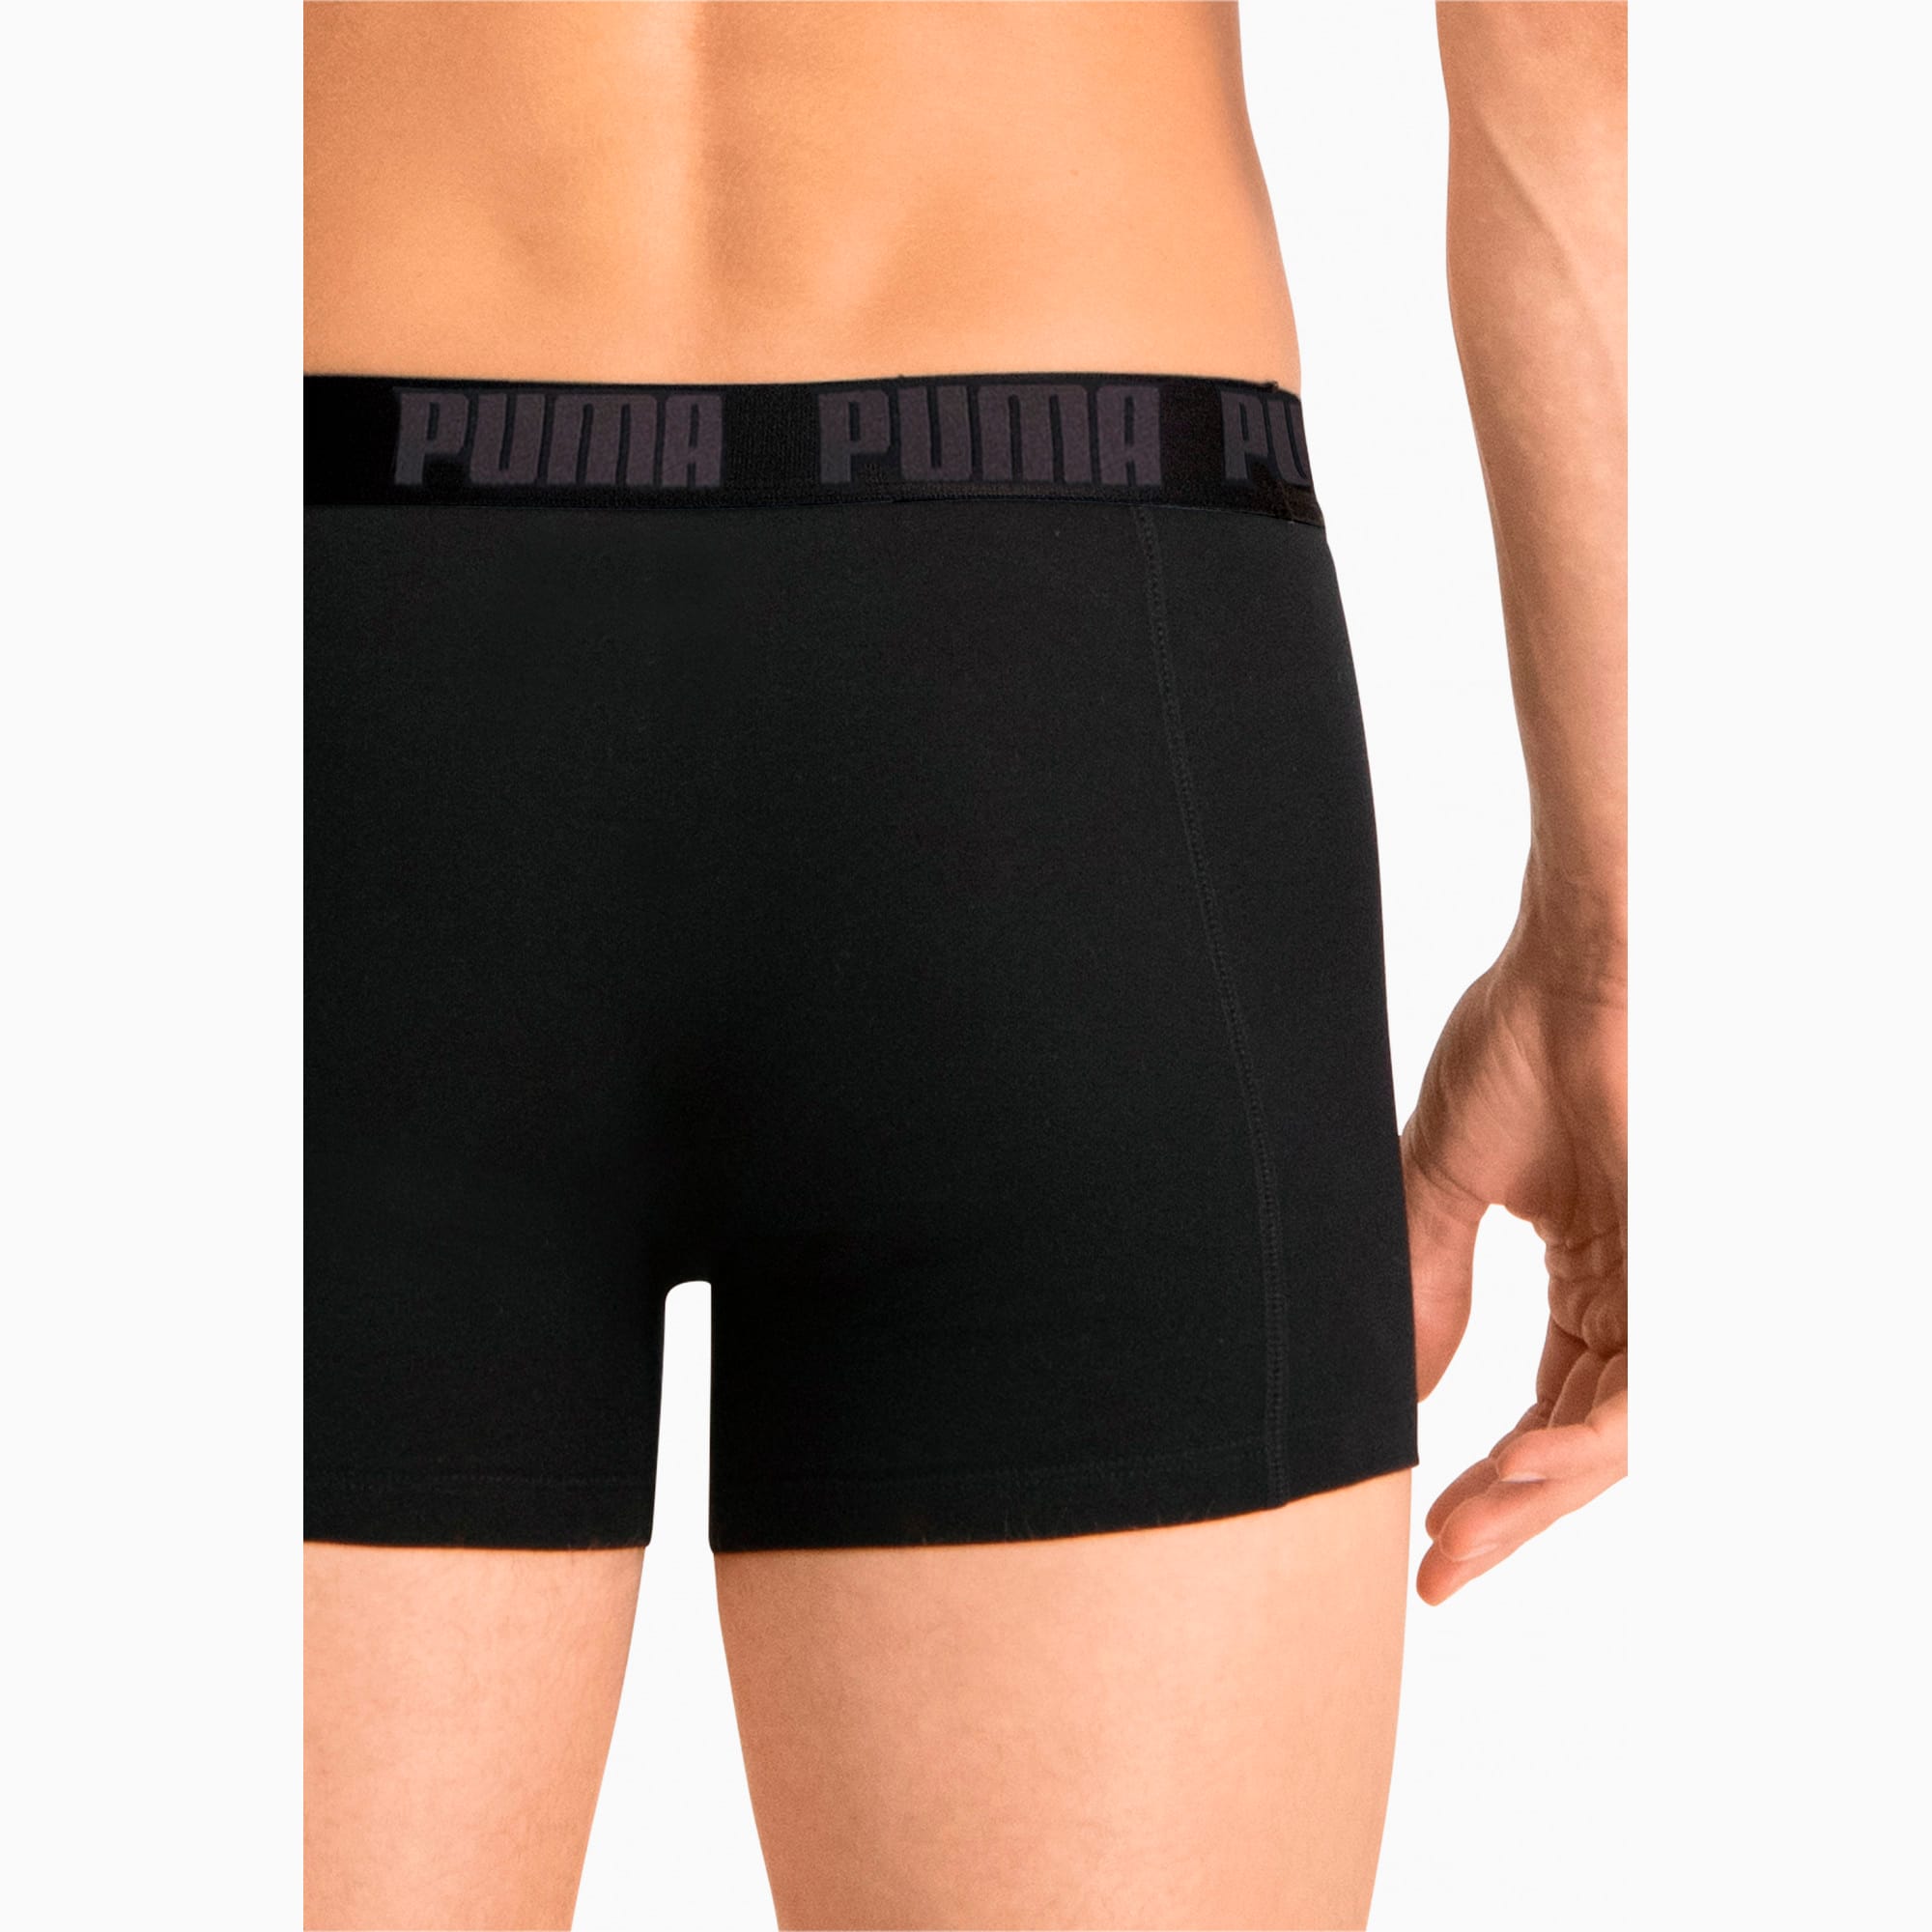 PUMA Boxer Shorts 2er Pack Für Herren, Schwarz, Größe: XL, Kleidung